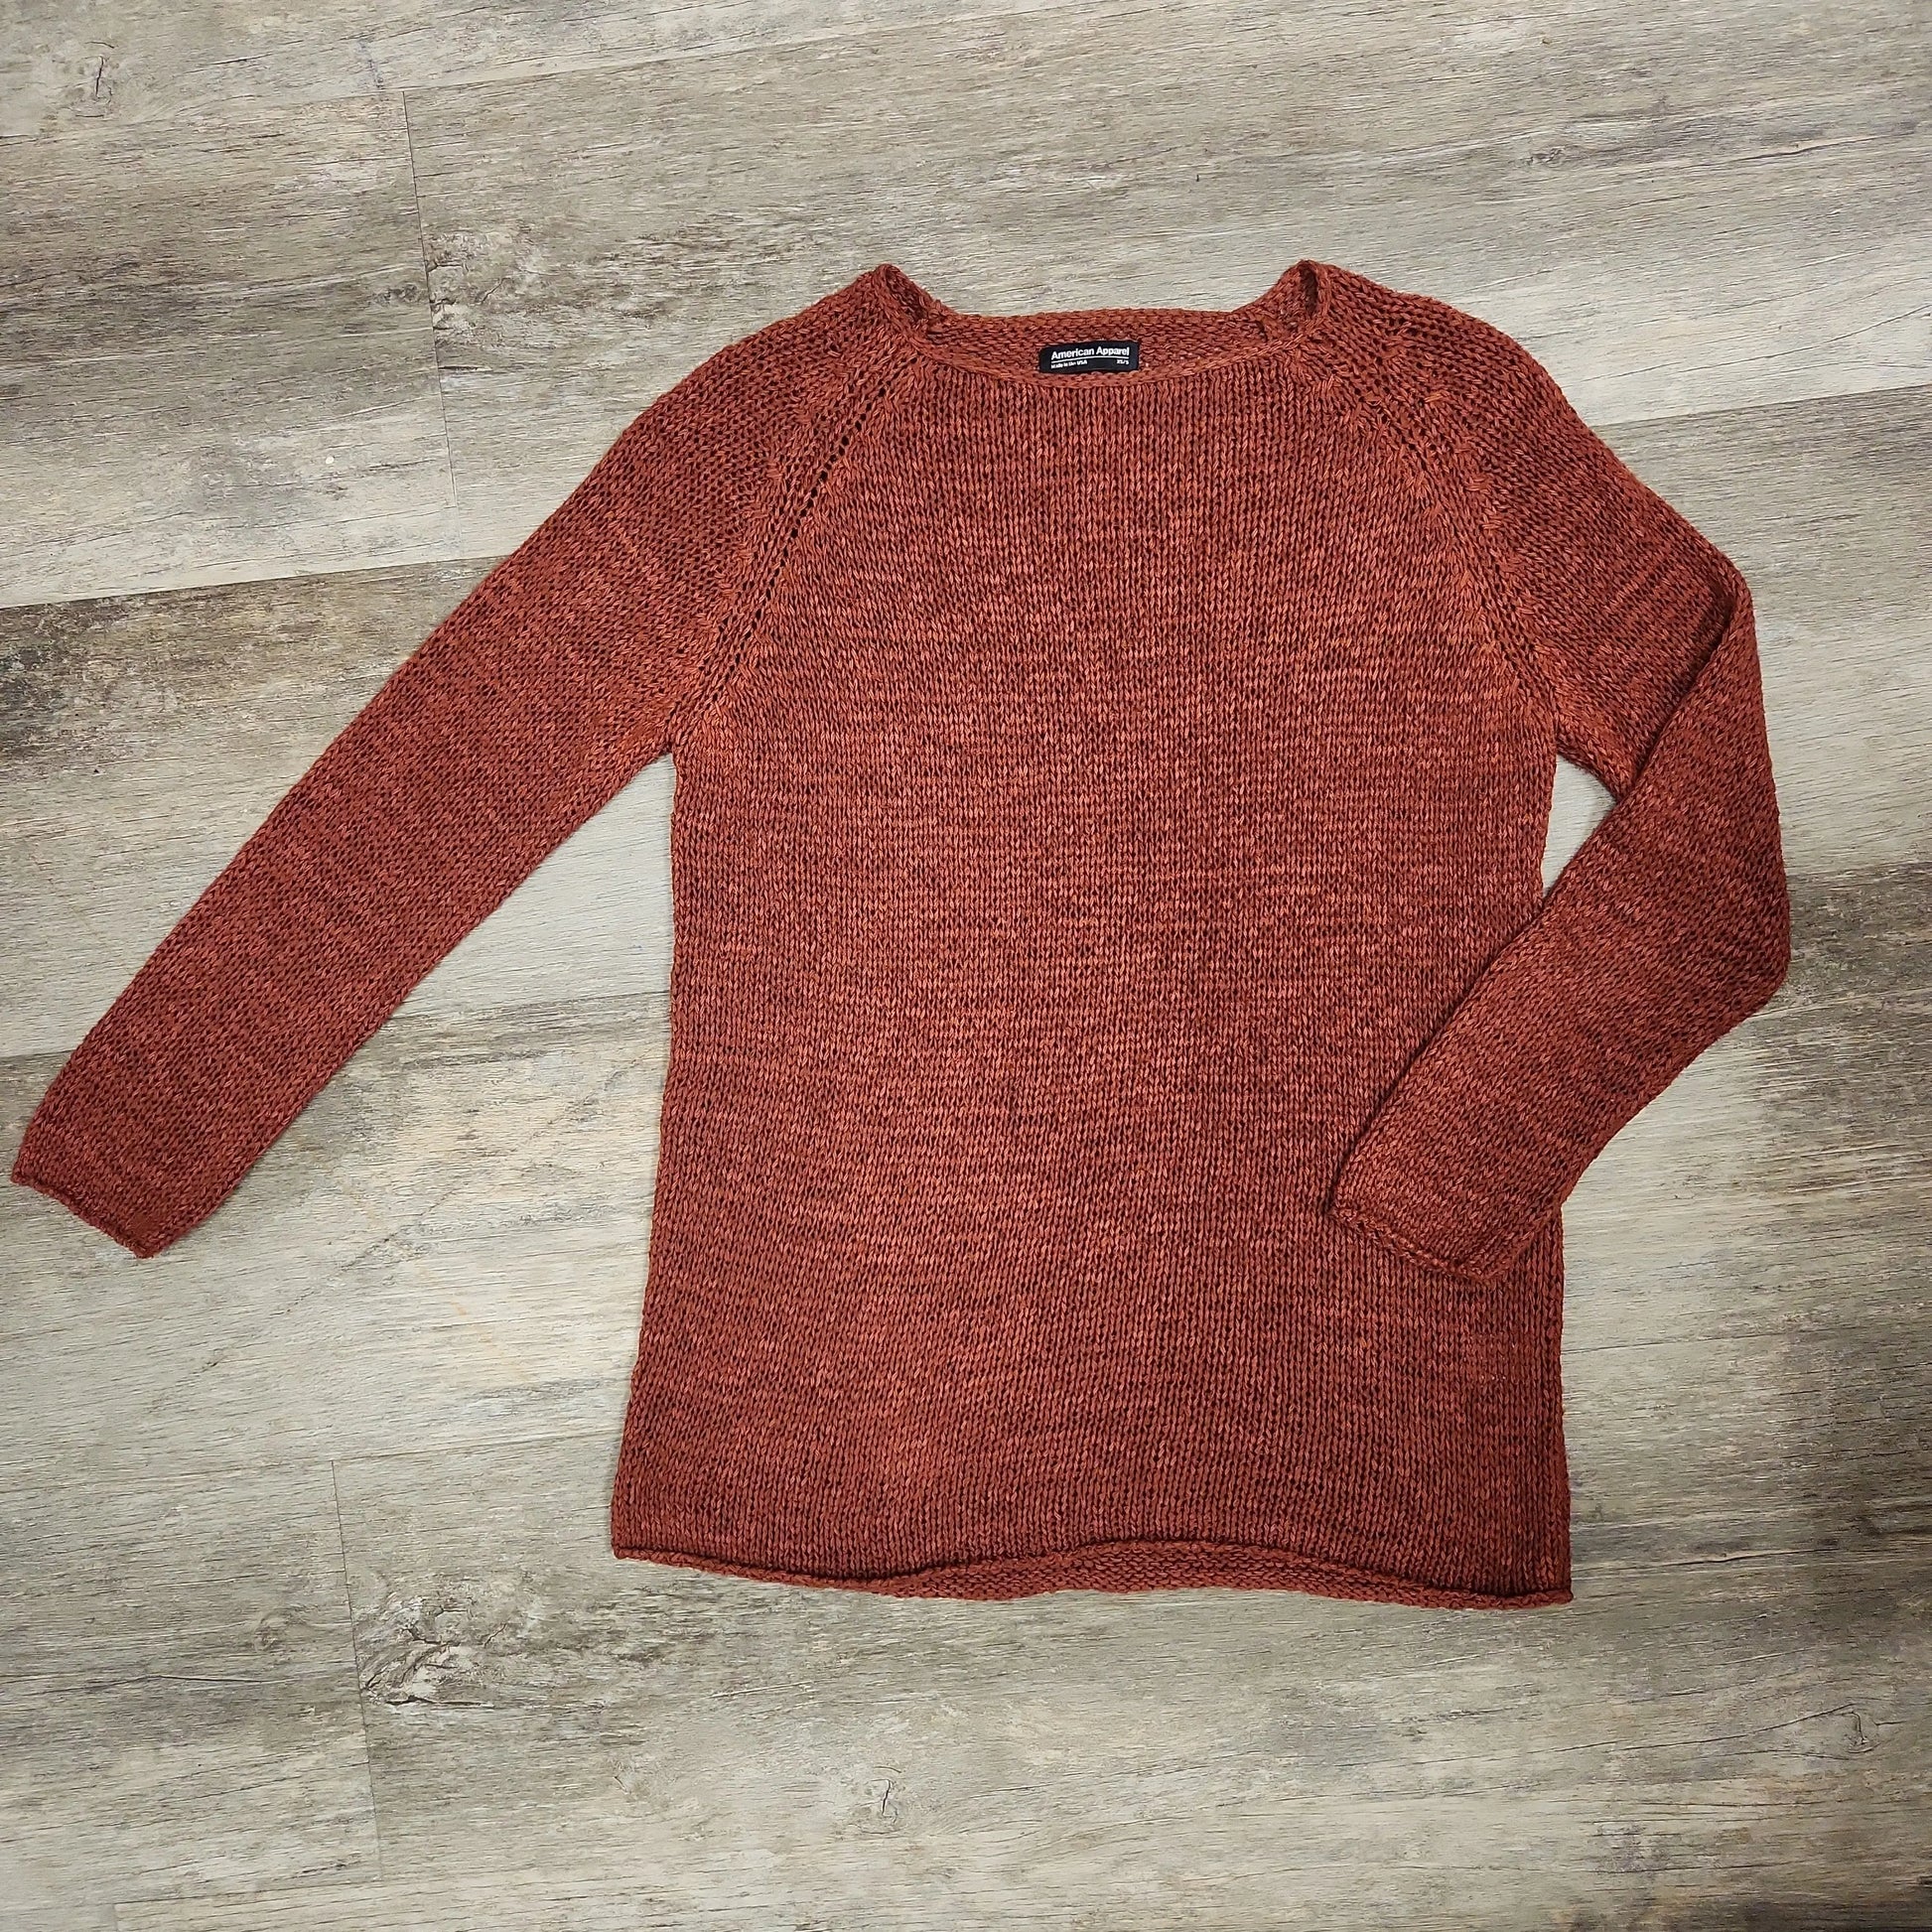 Rust Orange Sweater - Scarlett's Riverside Boutique 